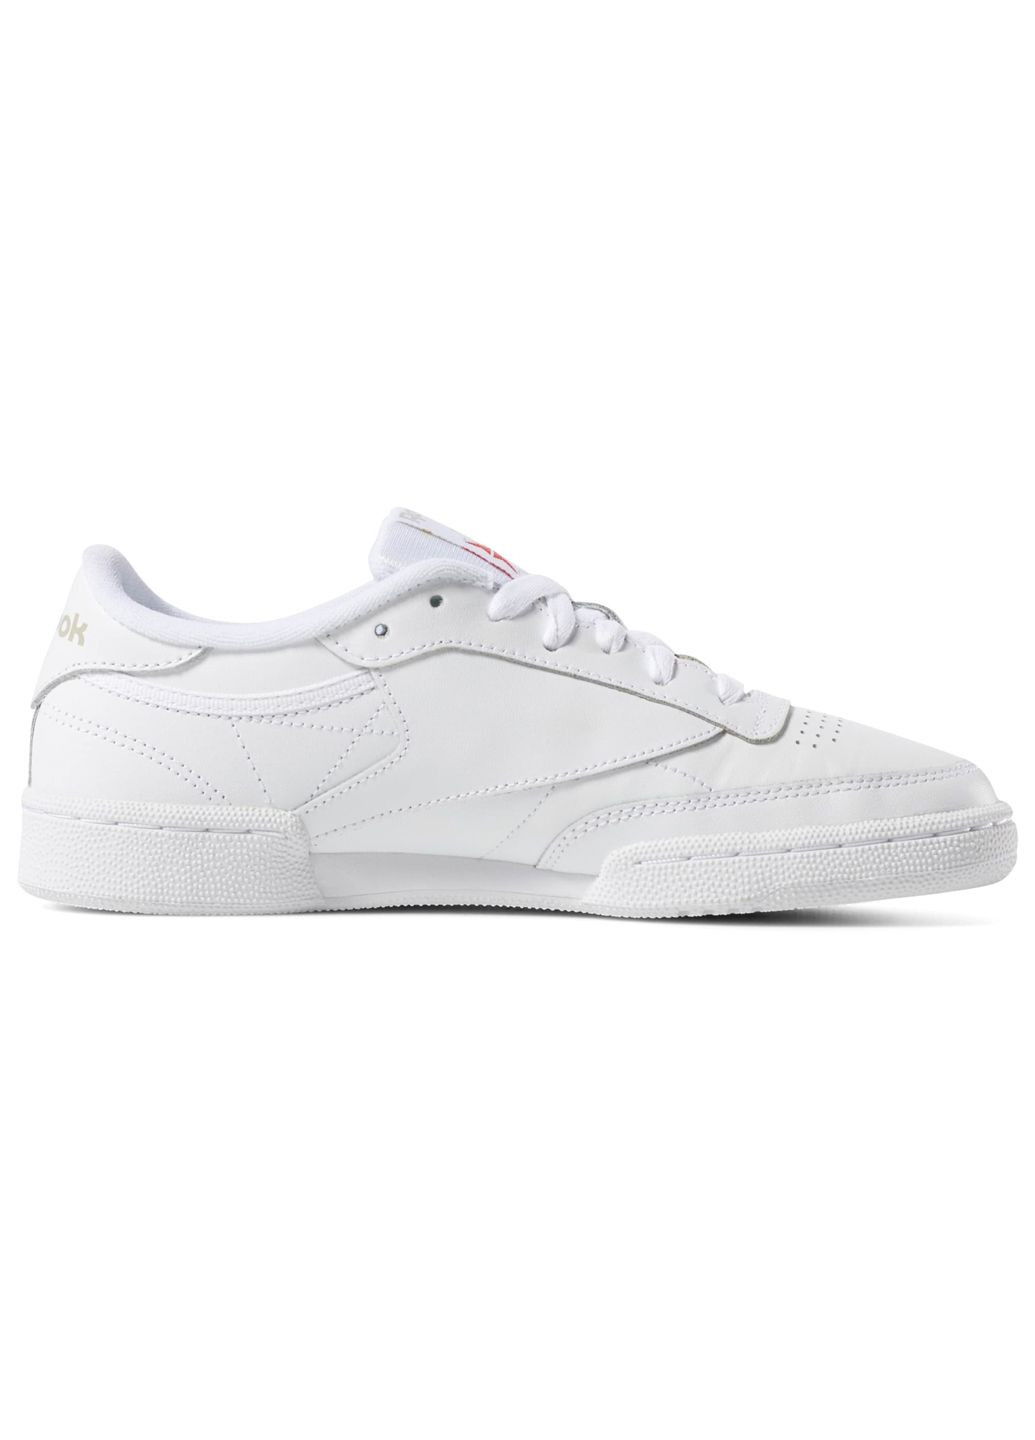 Белые кроссовки белые кожаные Reebok Club C 85 BS 7685